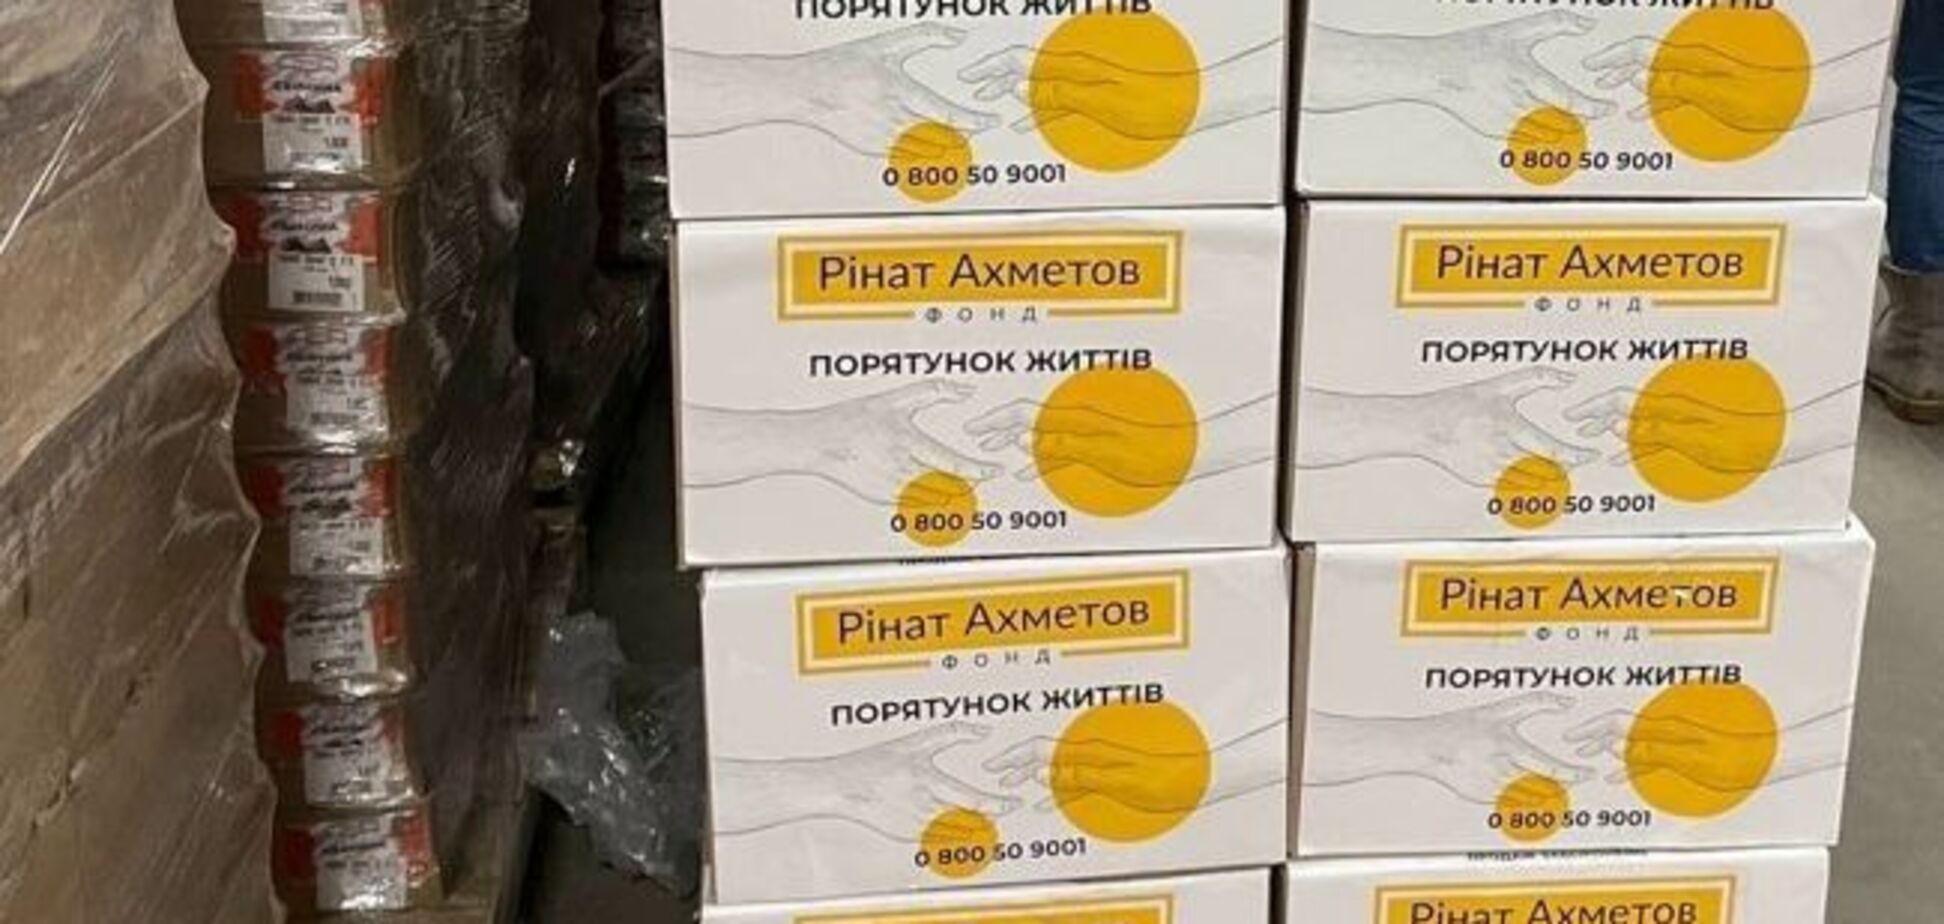 Жителі Покровська отримали понад 2 тисячі наборів гумдопомоги, – Требушкін